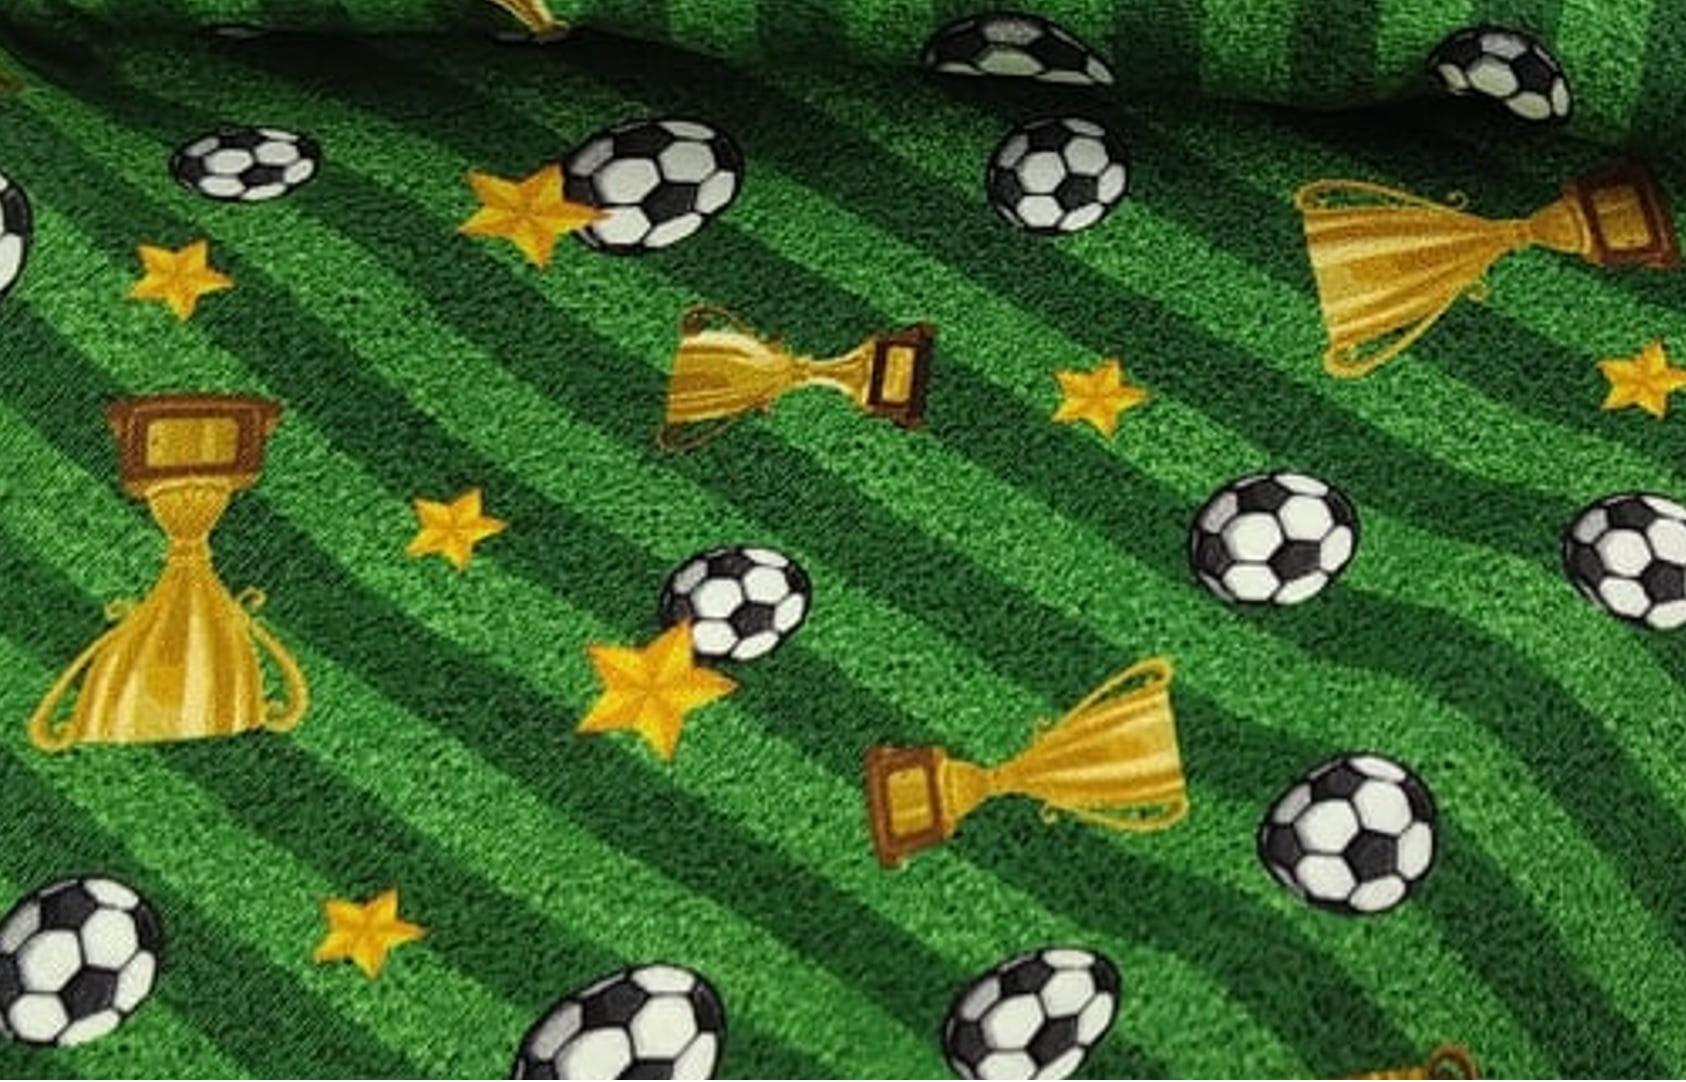 Tecido Tricoline Digital Bolas De Futebol e Troféus - Fundo Listrado Verde